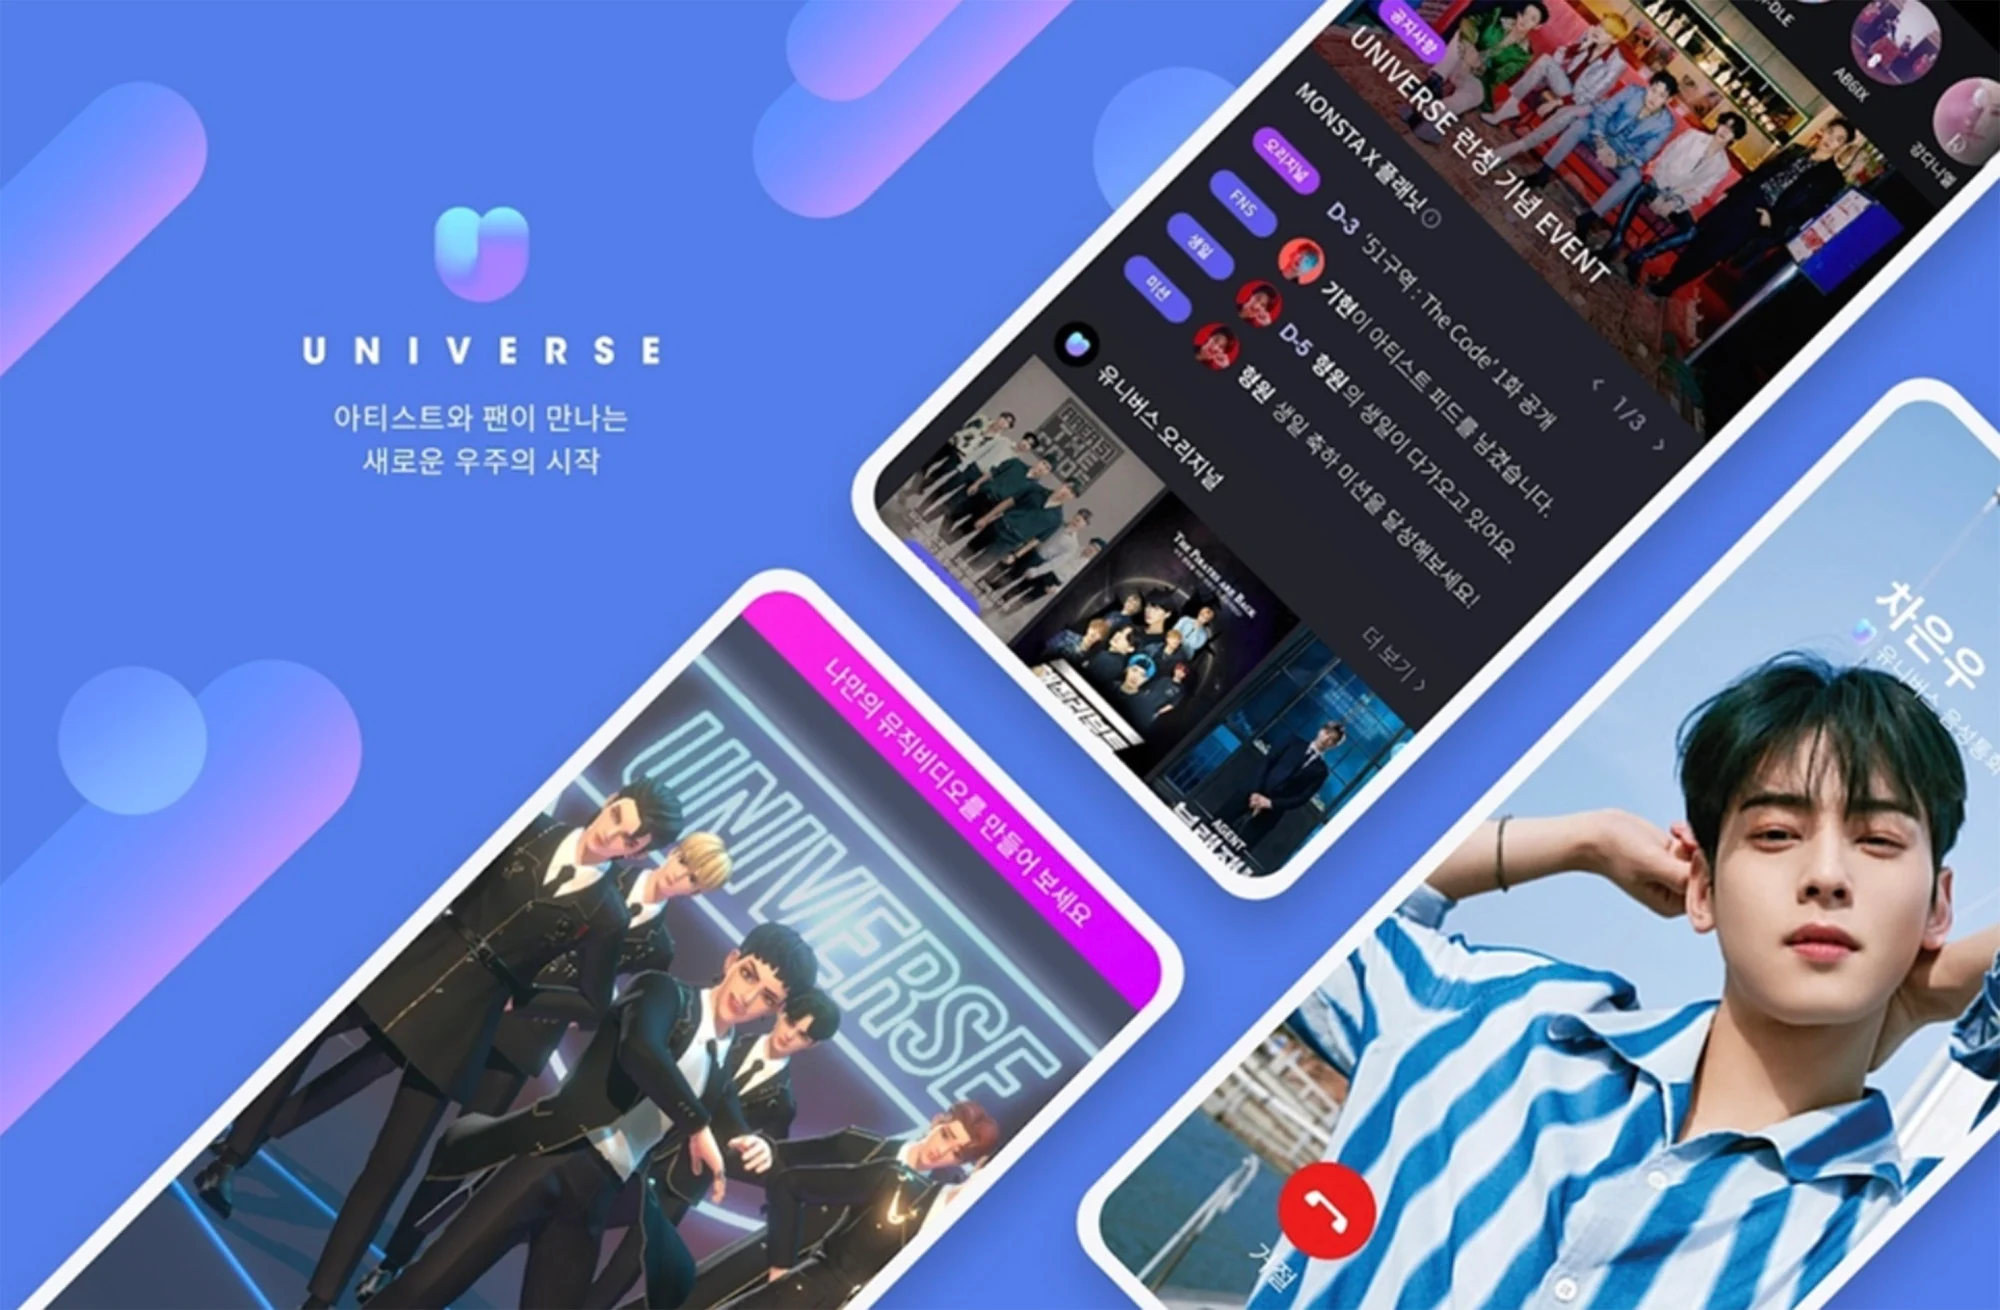 Tháng 1 năm ngoái, NCSoft đã ra mắt dịch vụ cộng đồng người hâm mộ K-pop Universe.